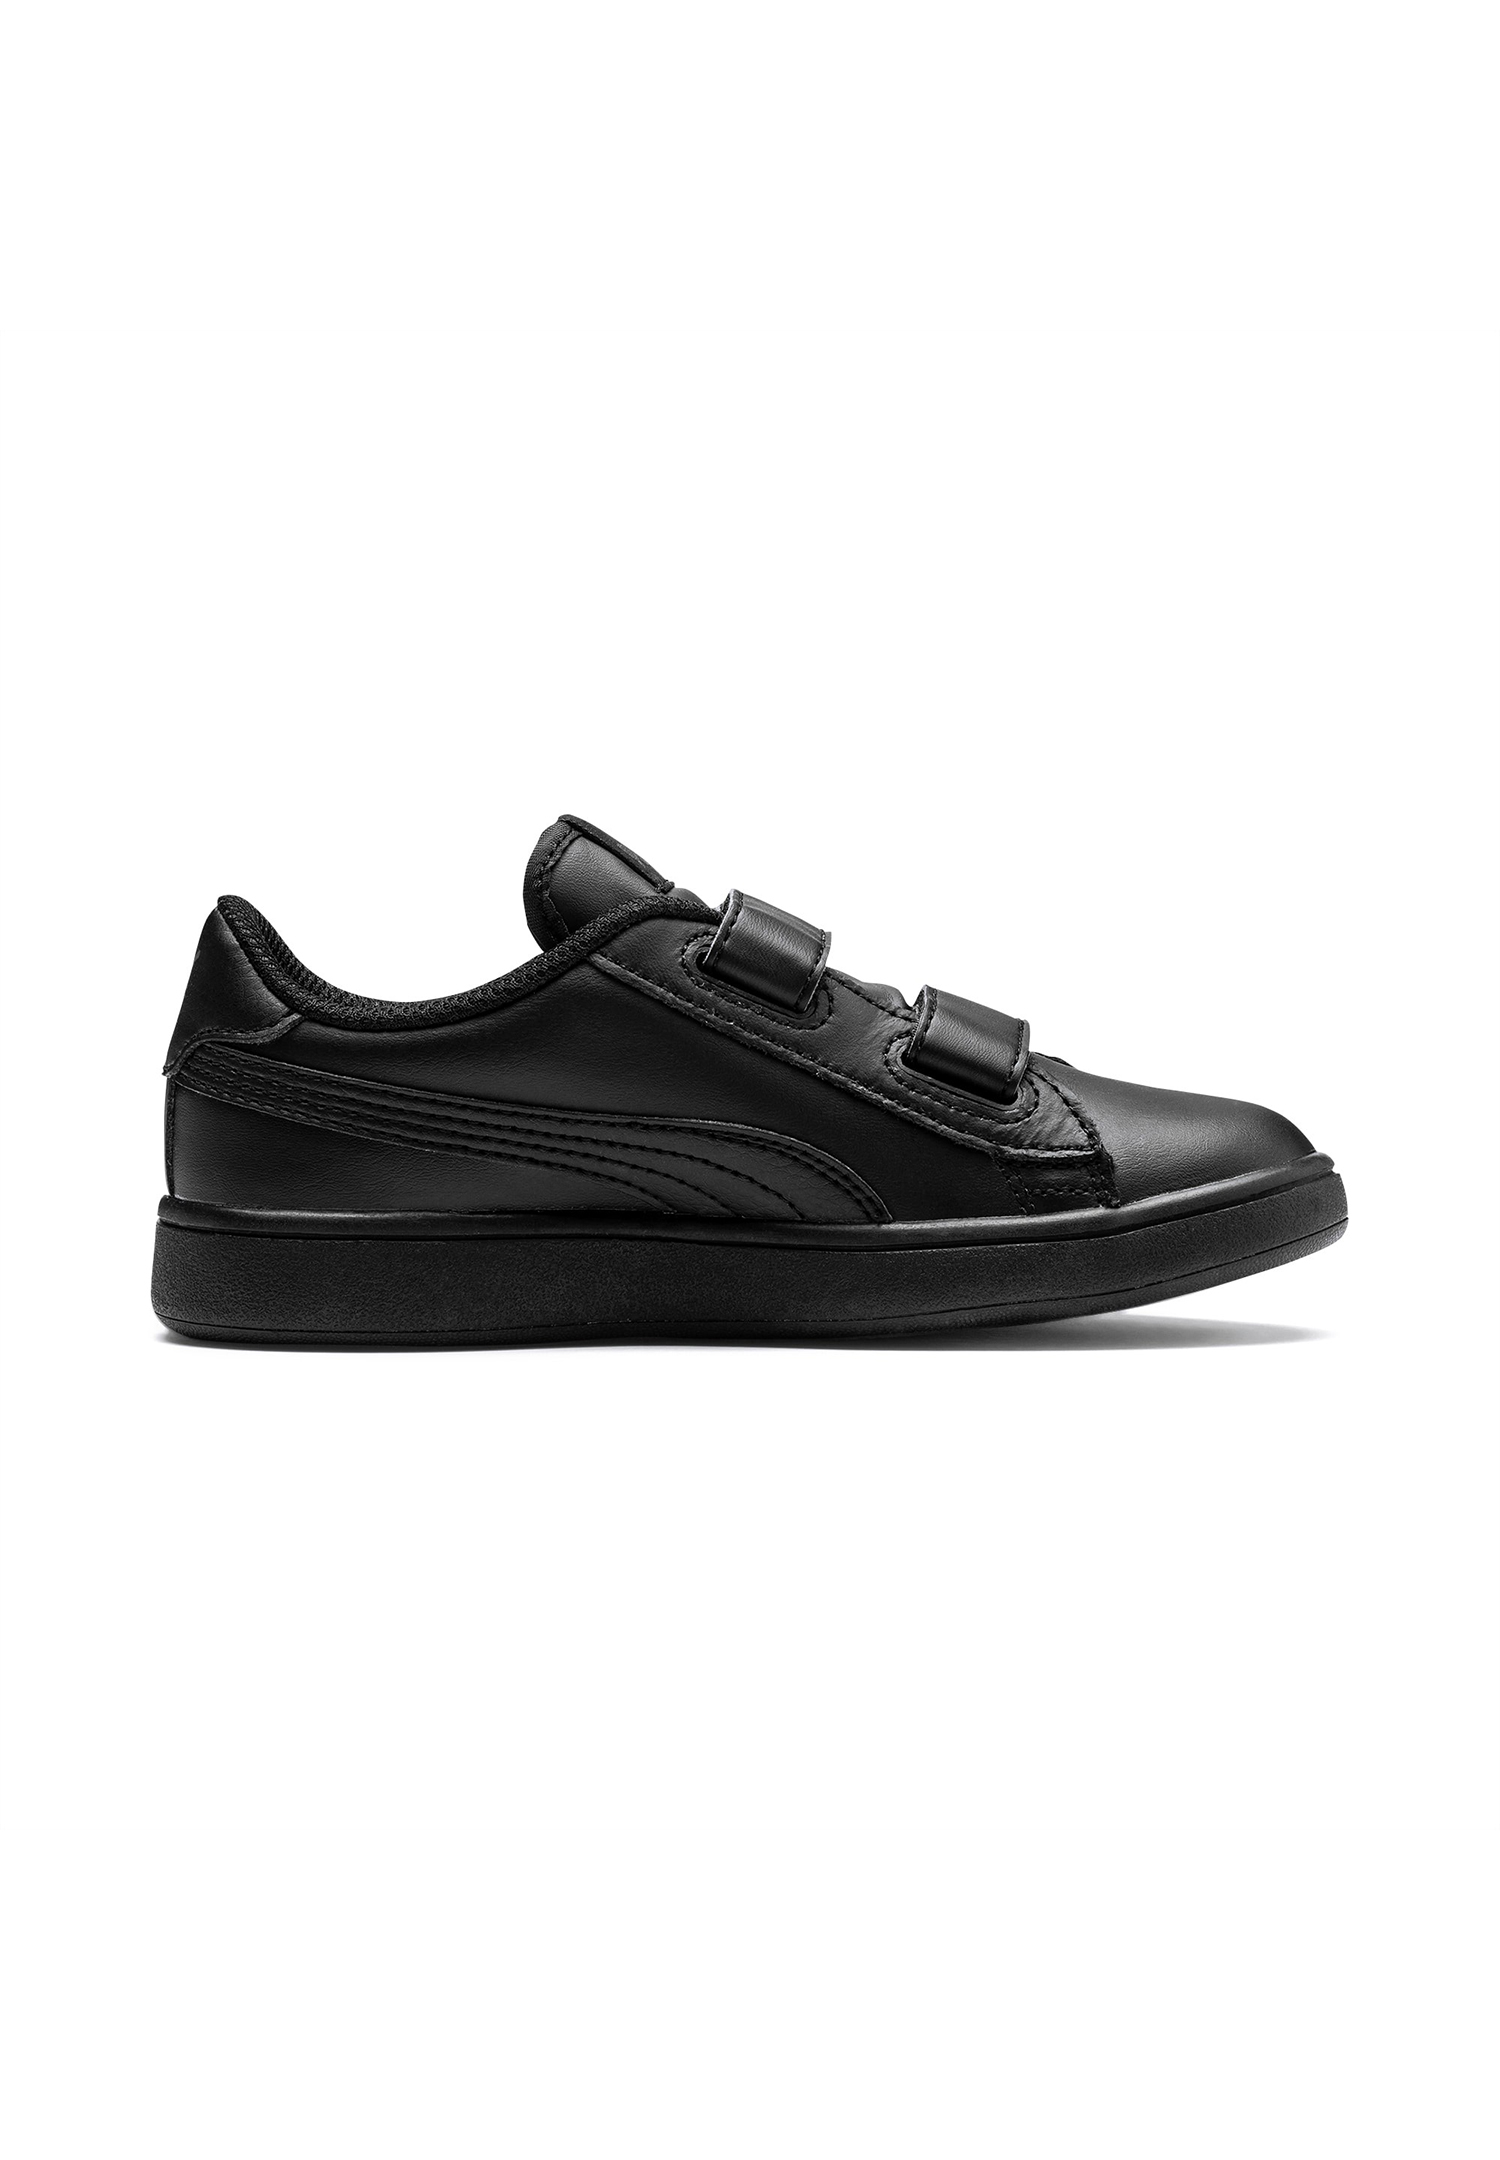 PUMA Smash V2 L V PS Kids Sneaker Schuhe schwarz 365173 01